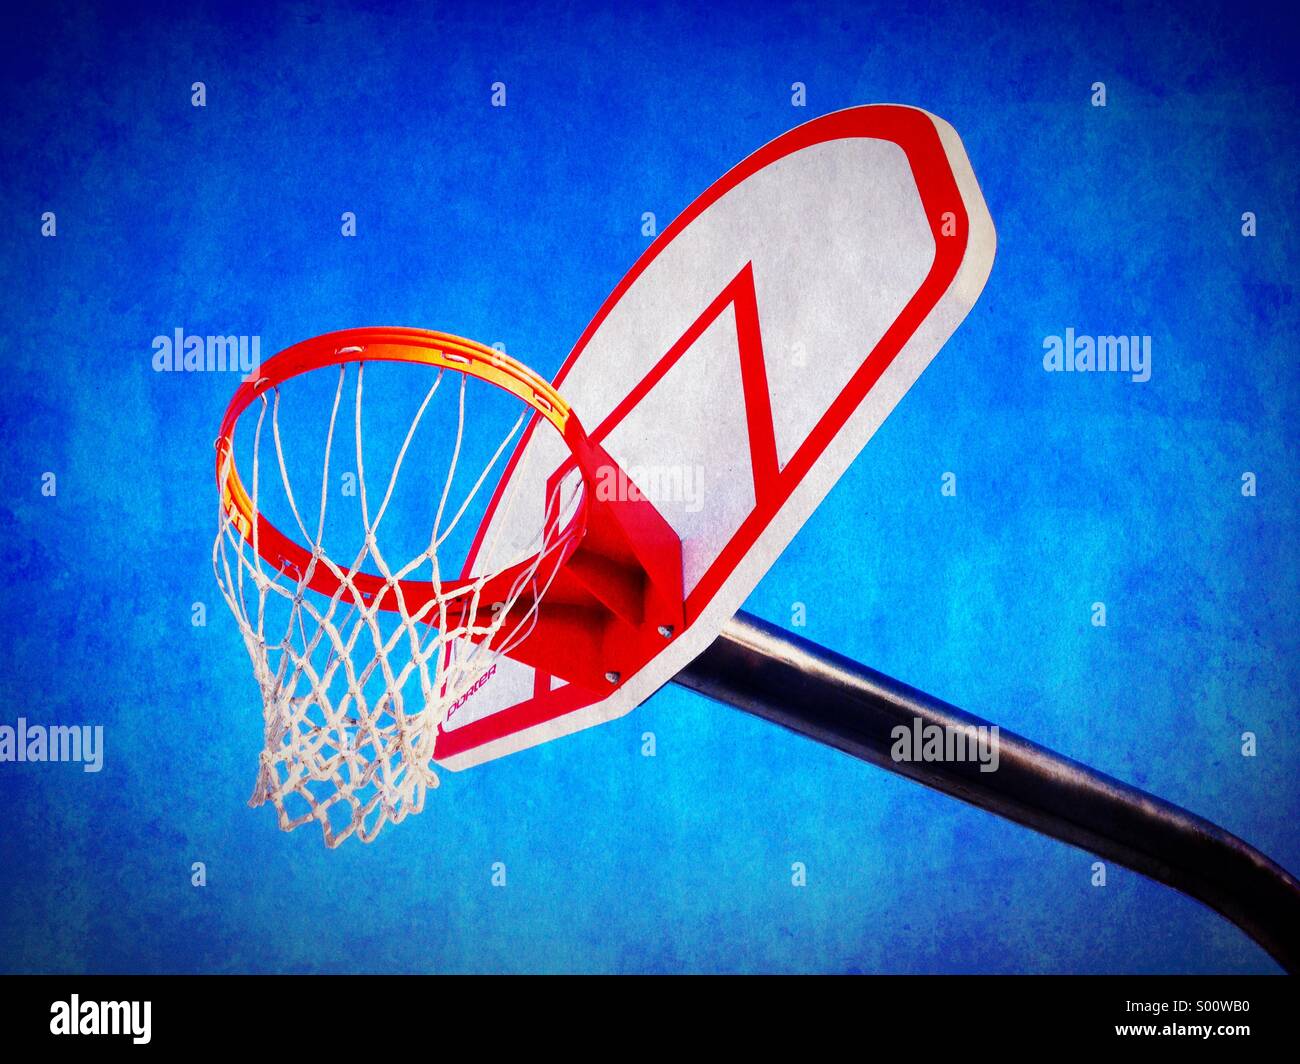 Basketball hoop and backboard. Stock Photo